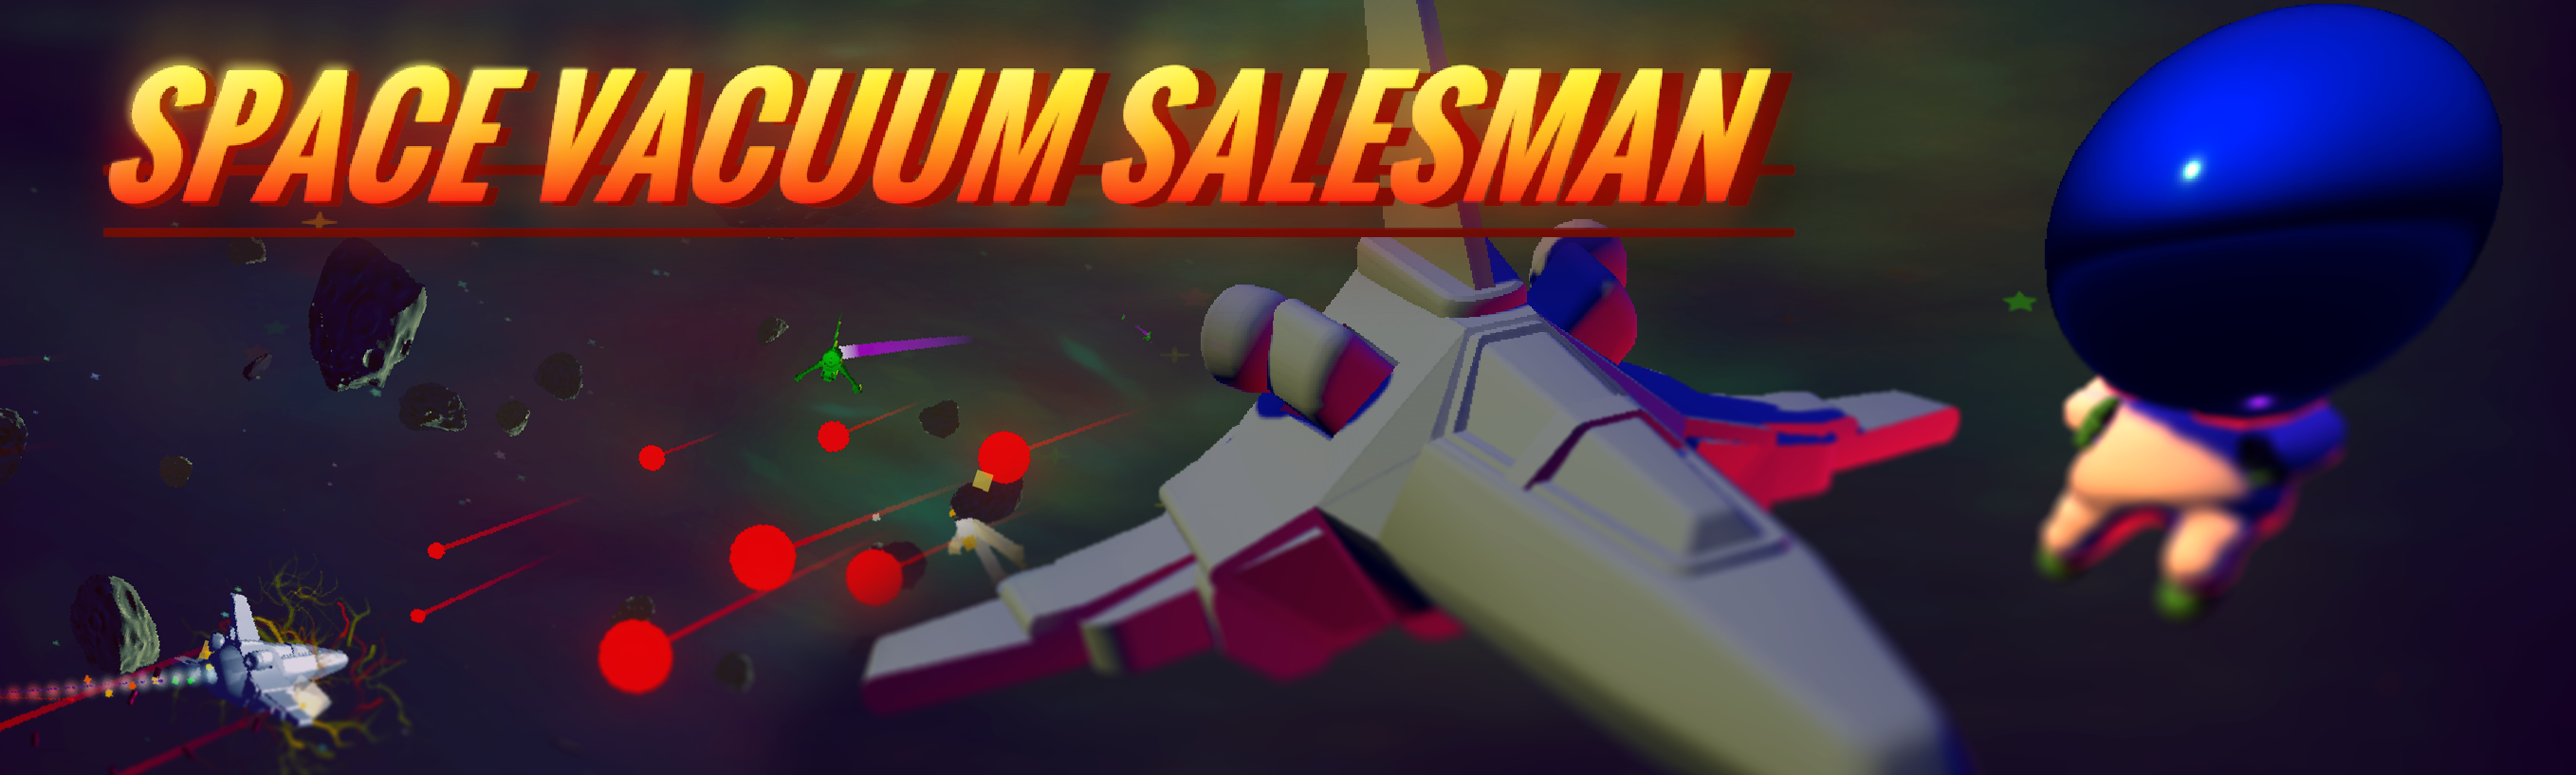 Space Vacuum Salesman